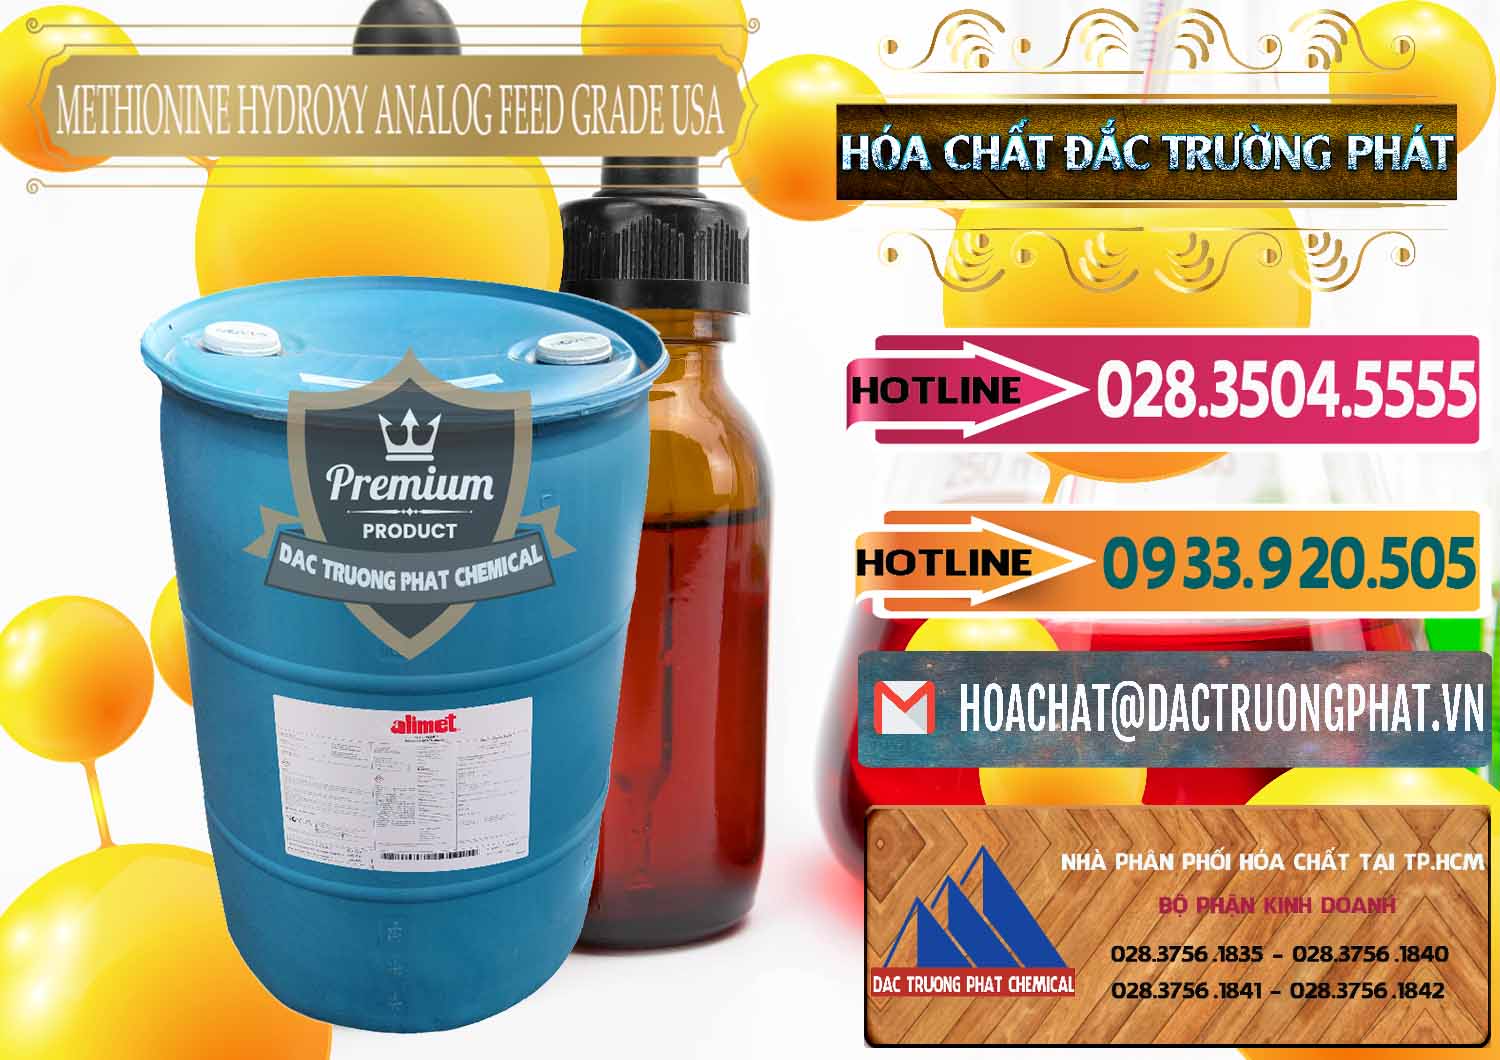 Nhà cung cấp & bán Methionine Nước - Dạng Lỏng Novus Alimet Mỹ USA - 0316 - Nơi chuyên bán & cung cấp hóa chất tại TP.HCM - dactruongphat.vn